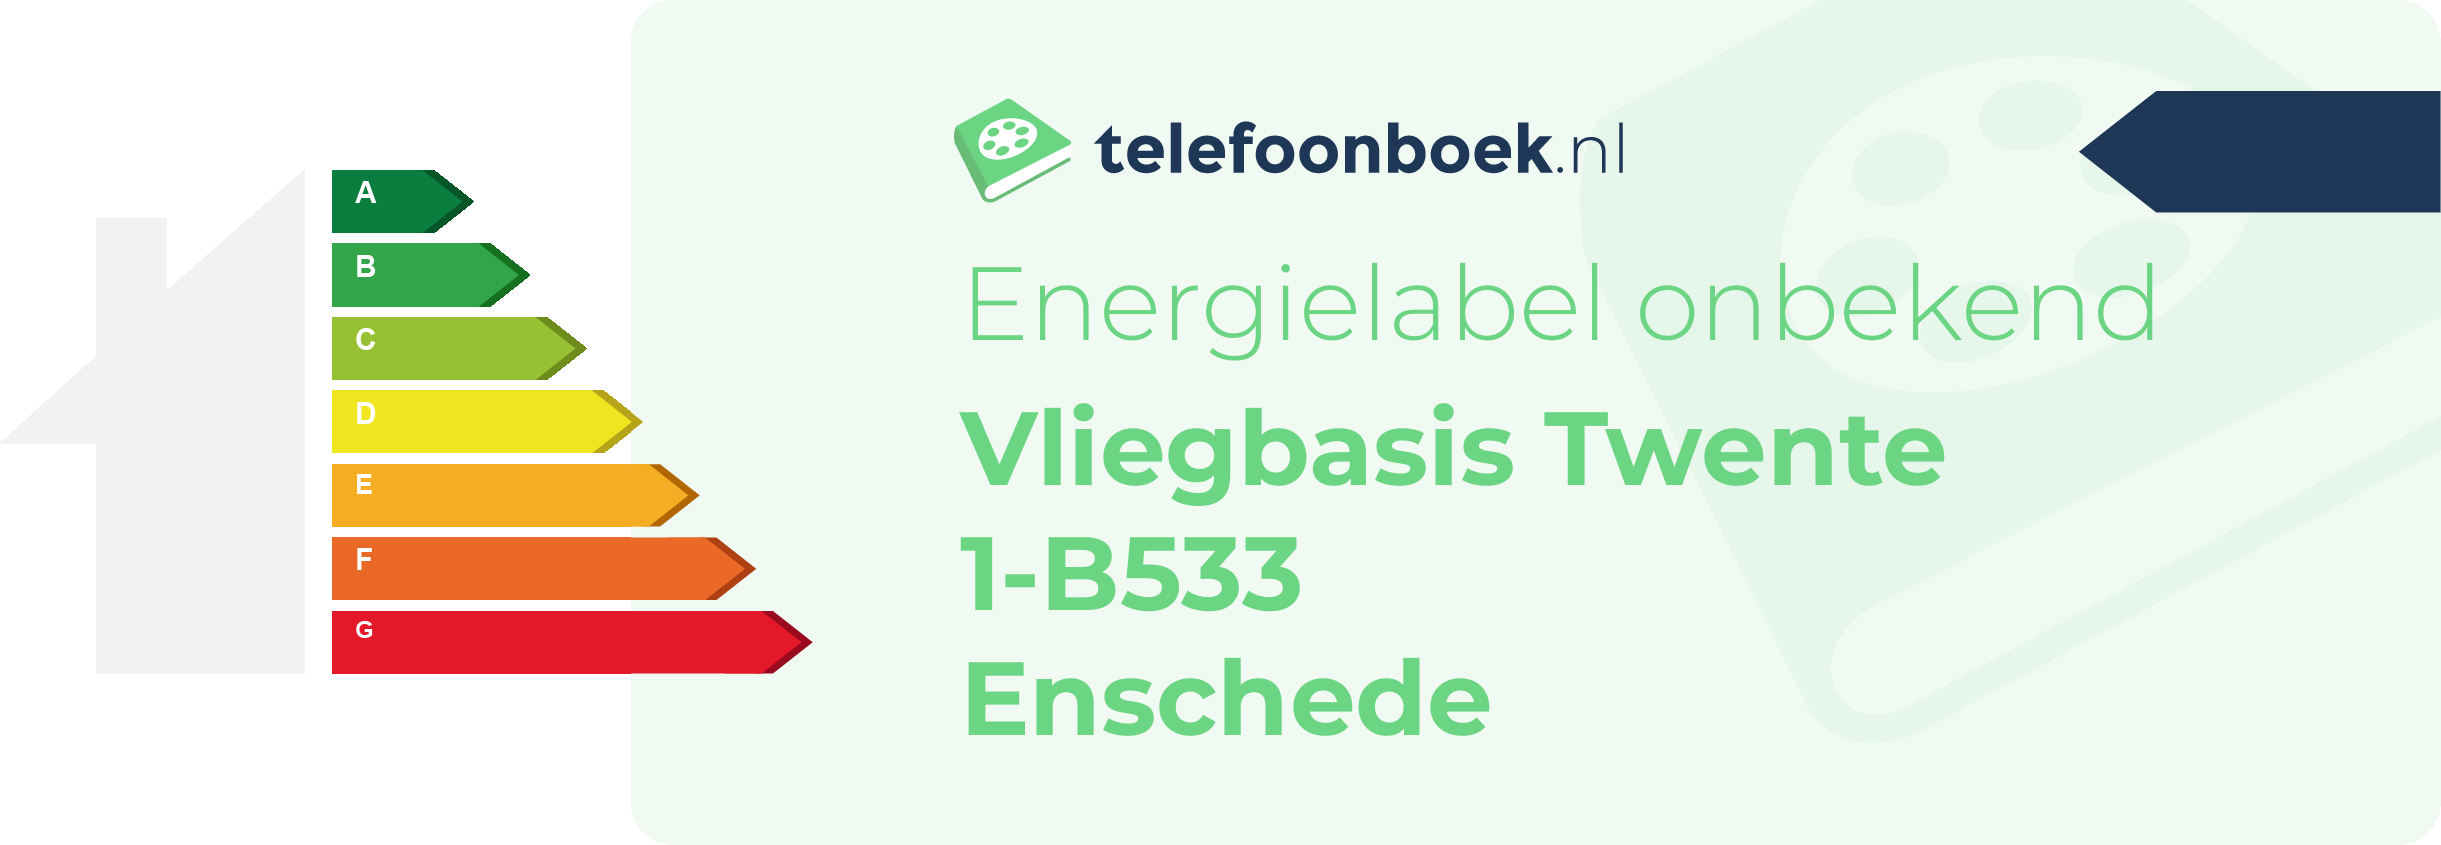 Energielabel Vliegbasis Twente 1-B533 Enschede